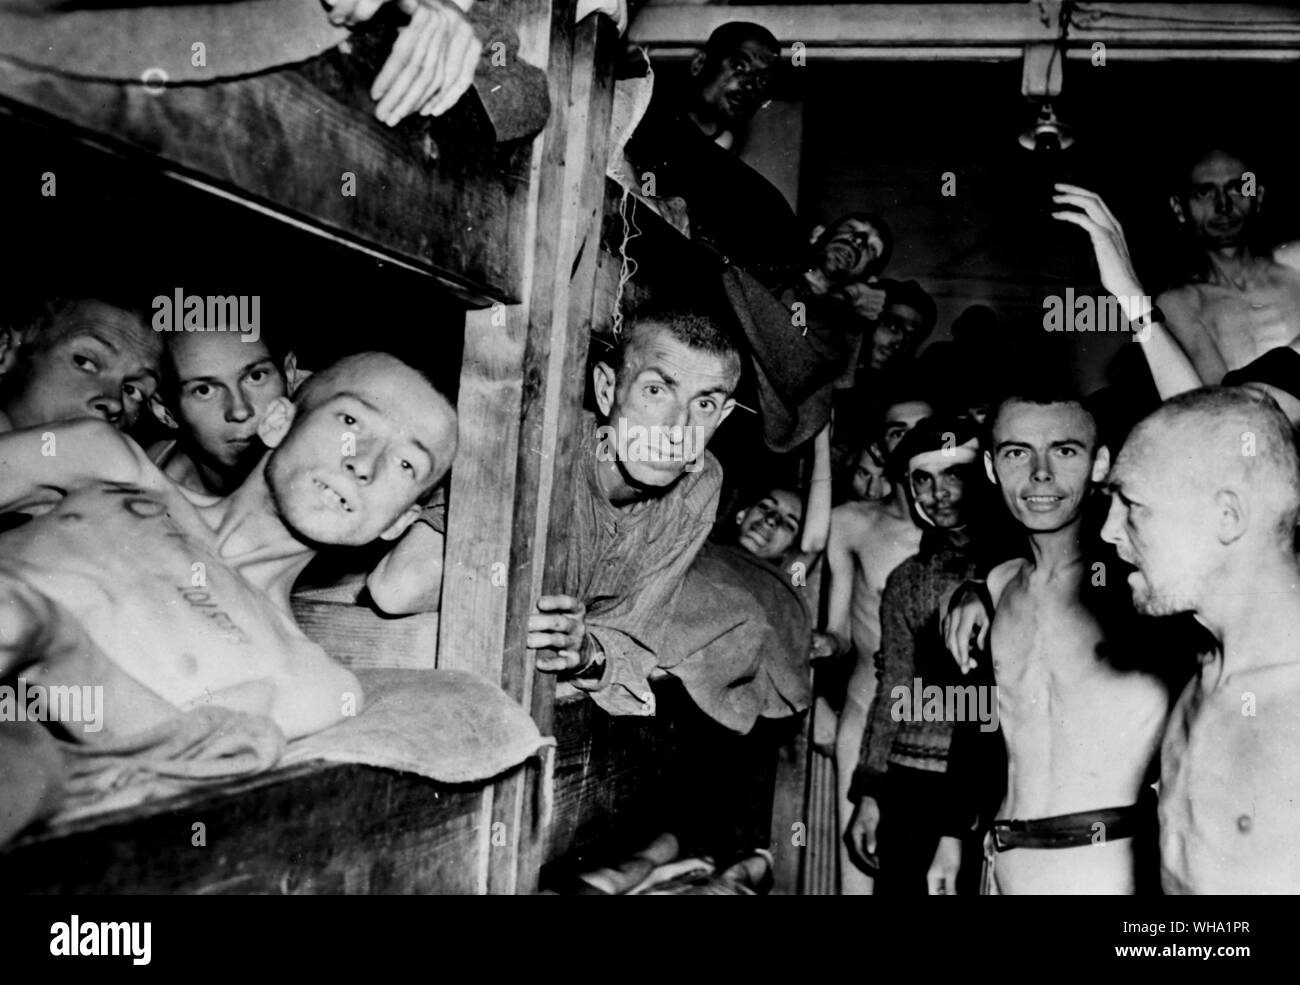 WW2 : Gaunt, prisonniers affamés, typique de ceux libérés des camps de concentration allemands par les forces alliées. Remarque l'identification le tatouage sur la poitrine de l'homme sur la gauche. Banque D'Images